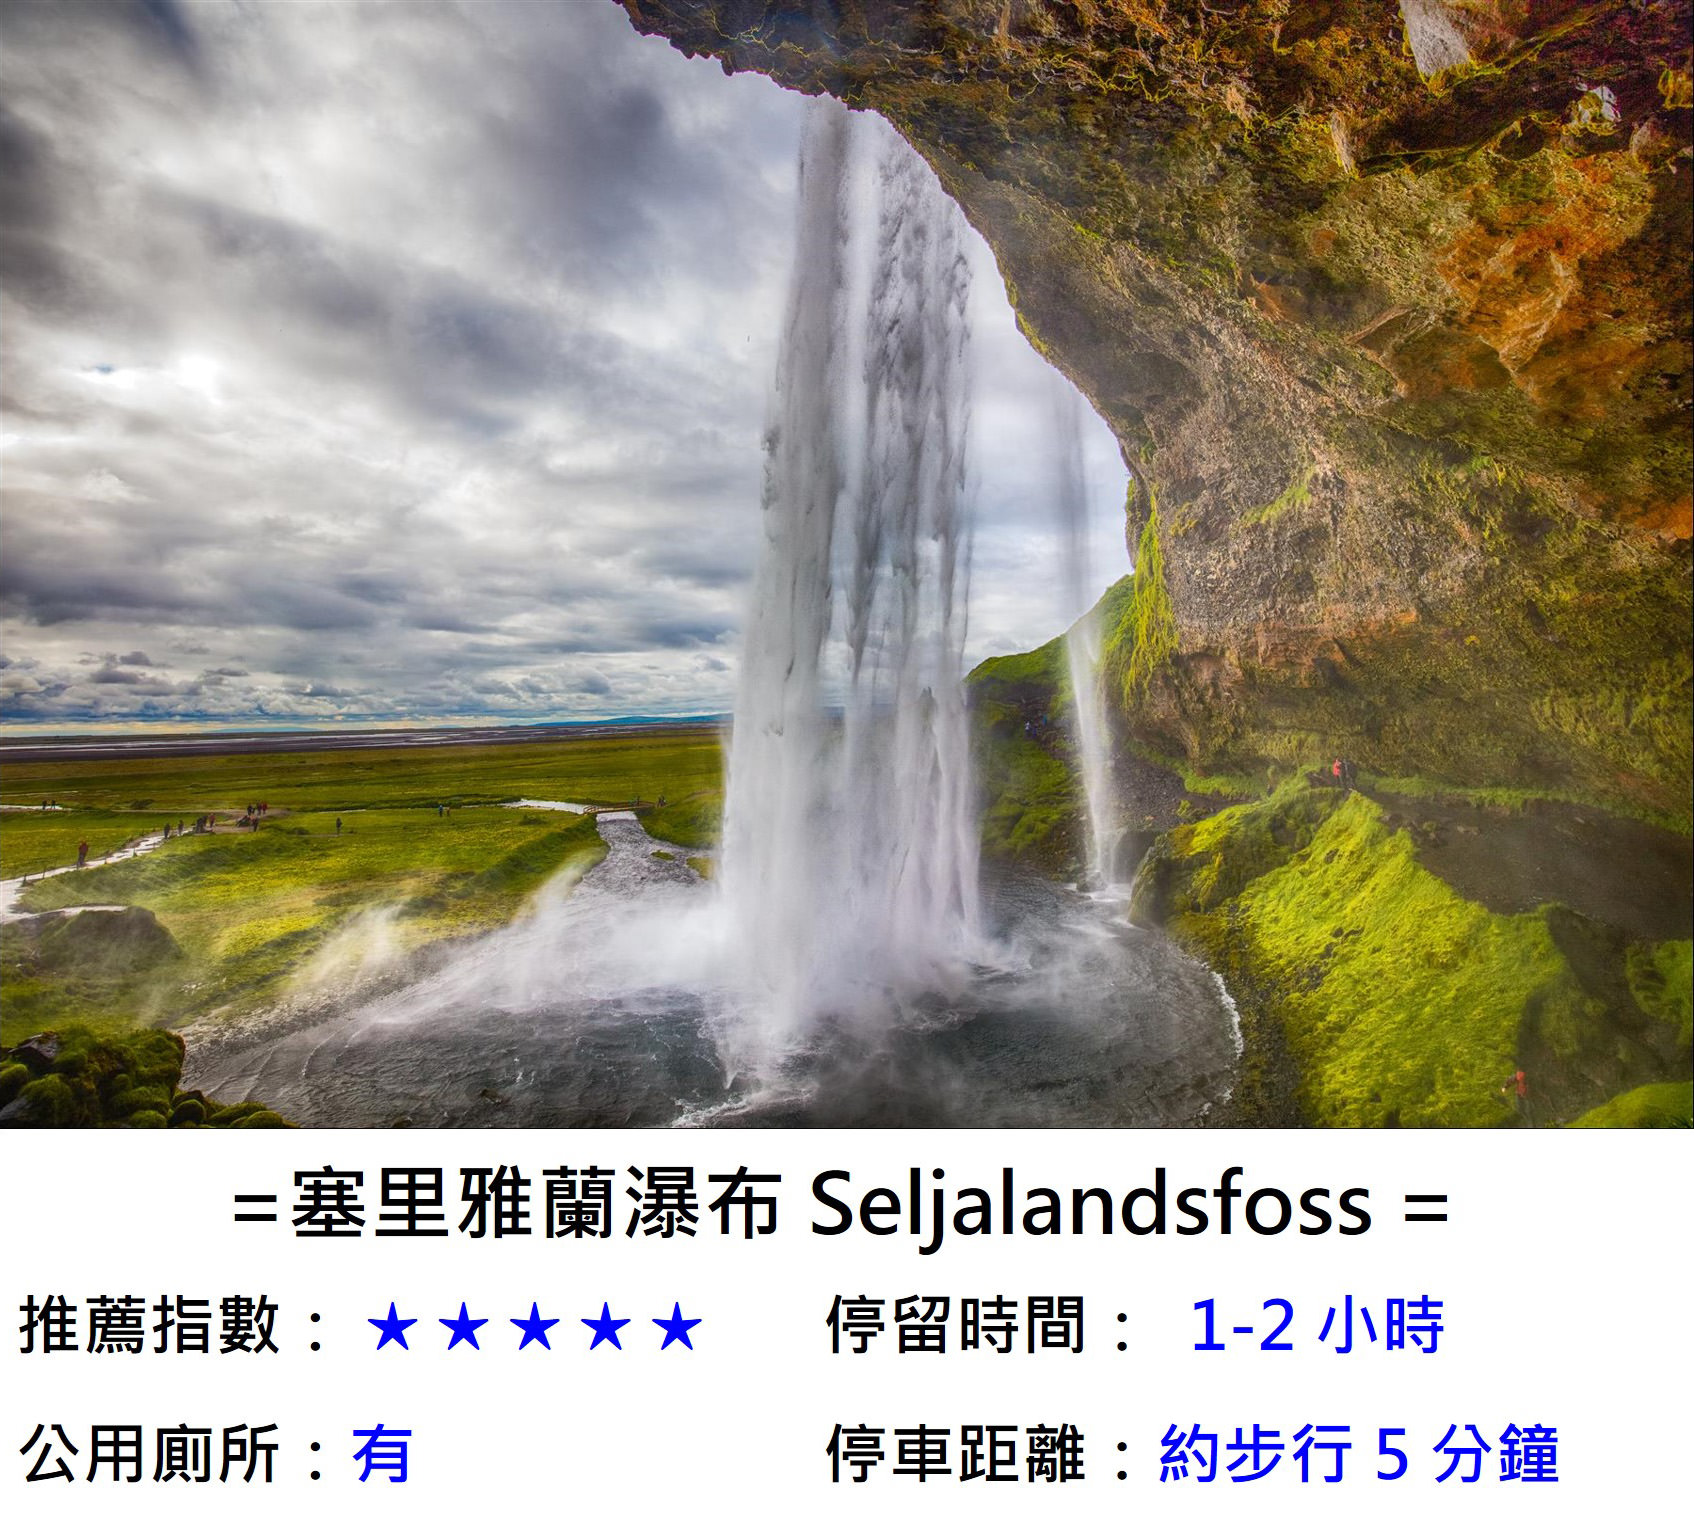 [冰島/規畫] 冰島 2 天 1 夜行程規劃 , 金圈景點、南部二大瀑布、黑沙灘